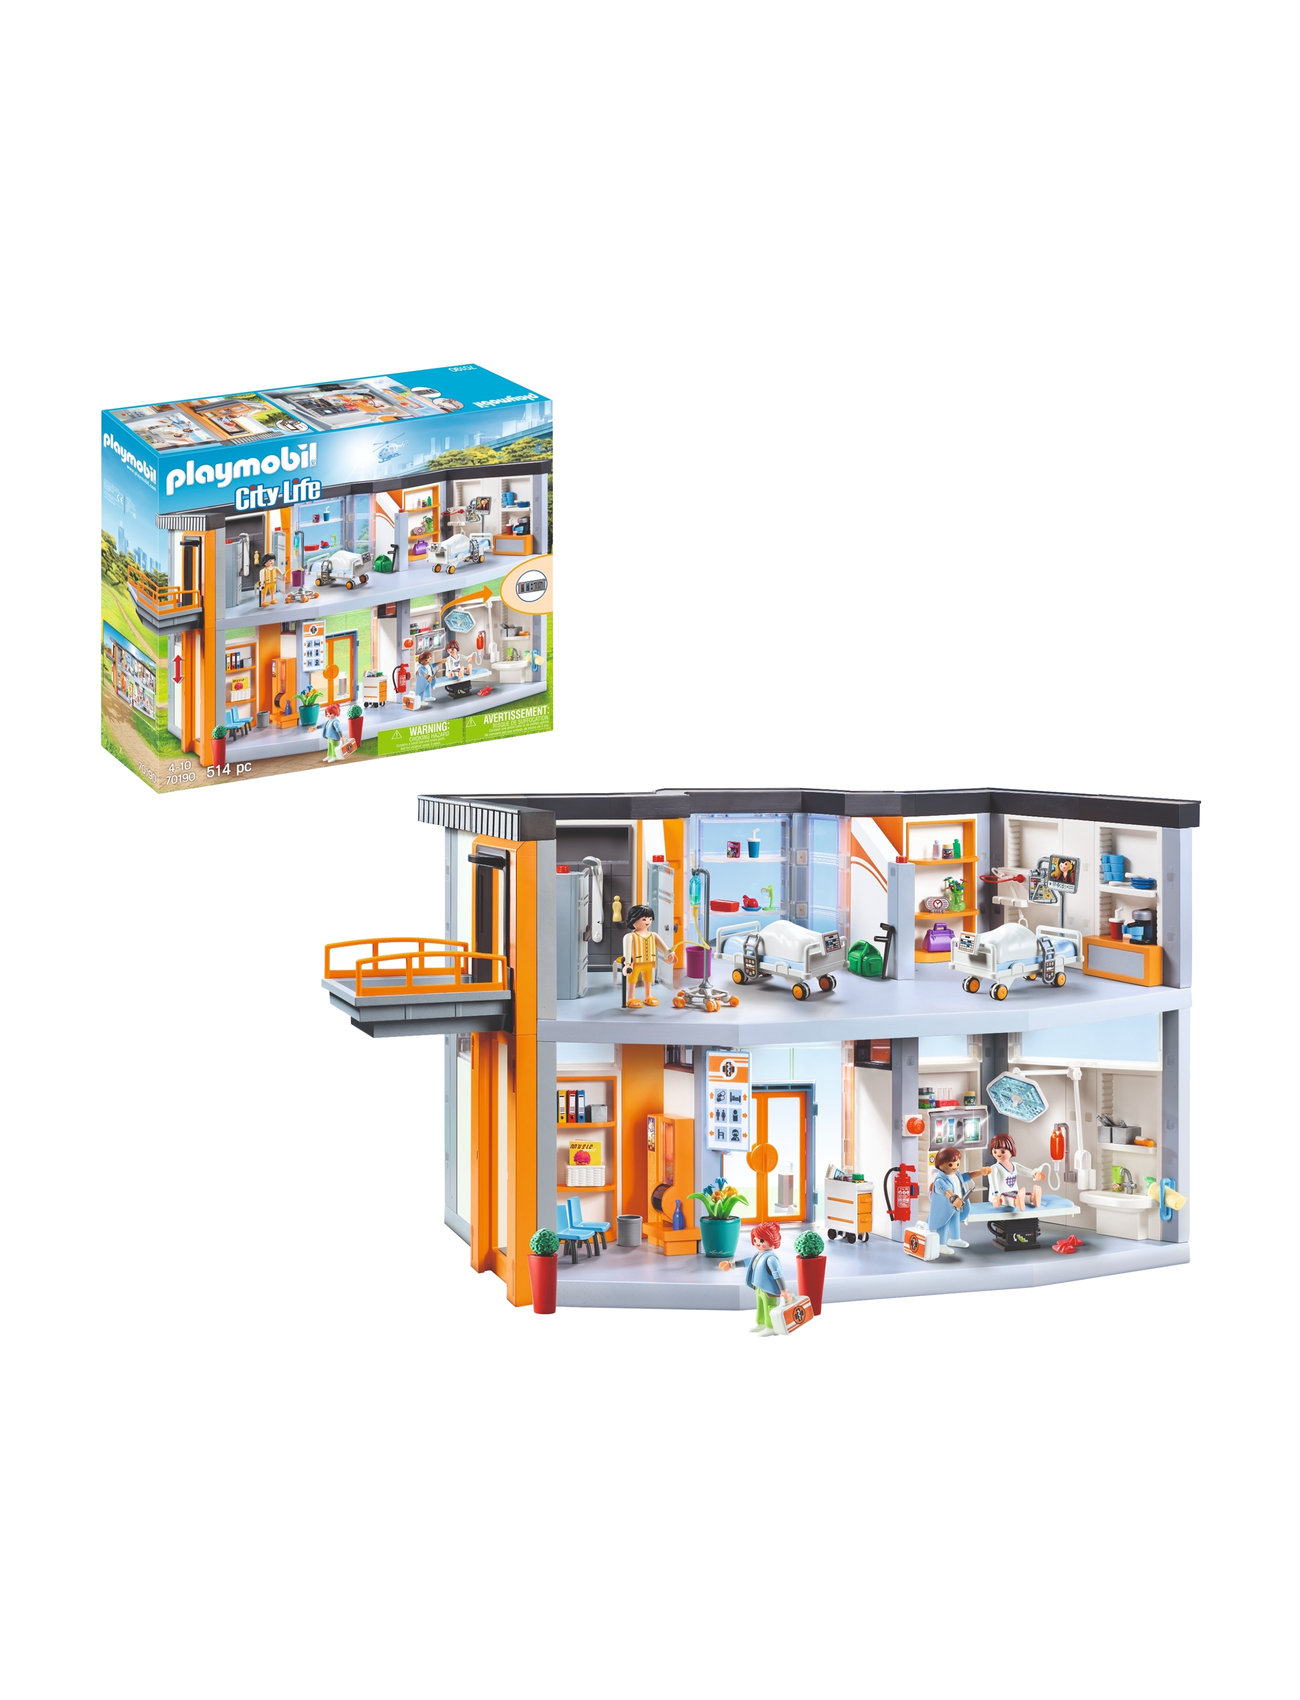 Playmobil City Life, Stort utbud av designermärken